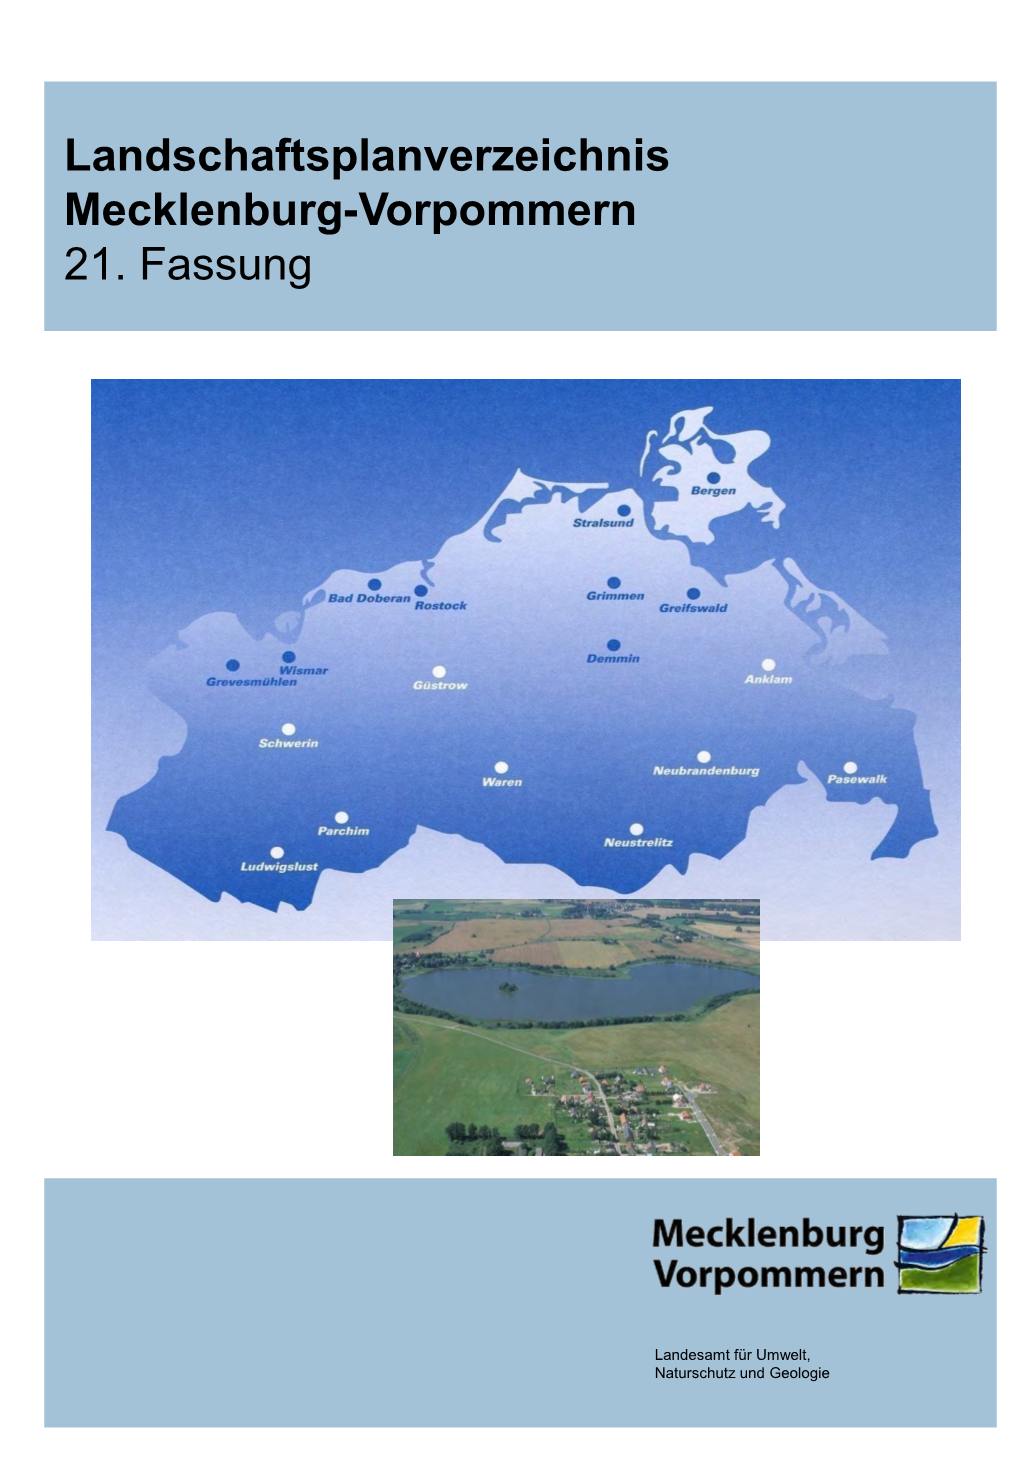 Landschaftsplanverzeichnis Mecklenburg-Vorpommerrn